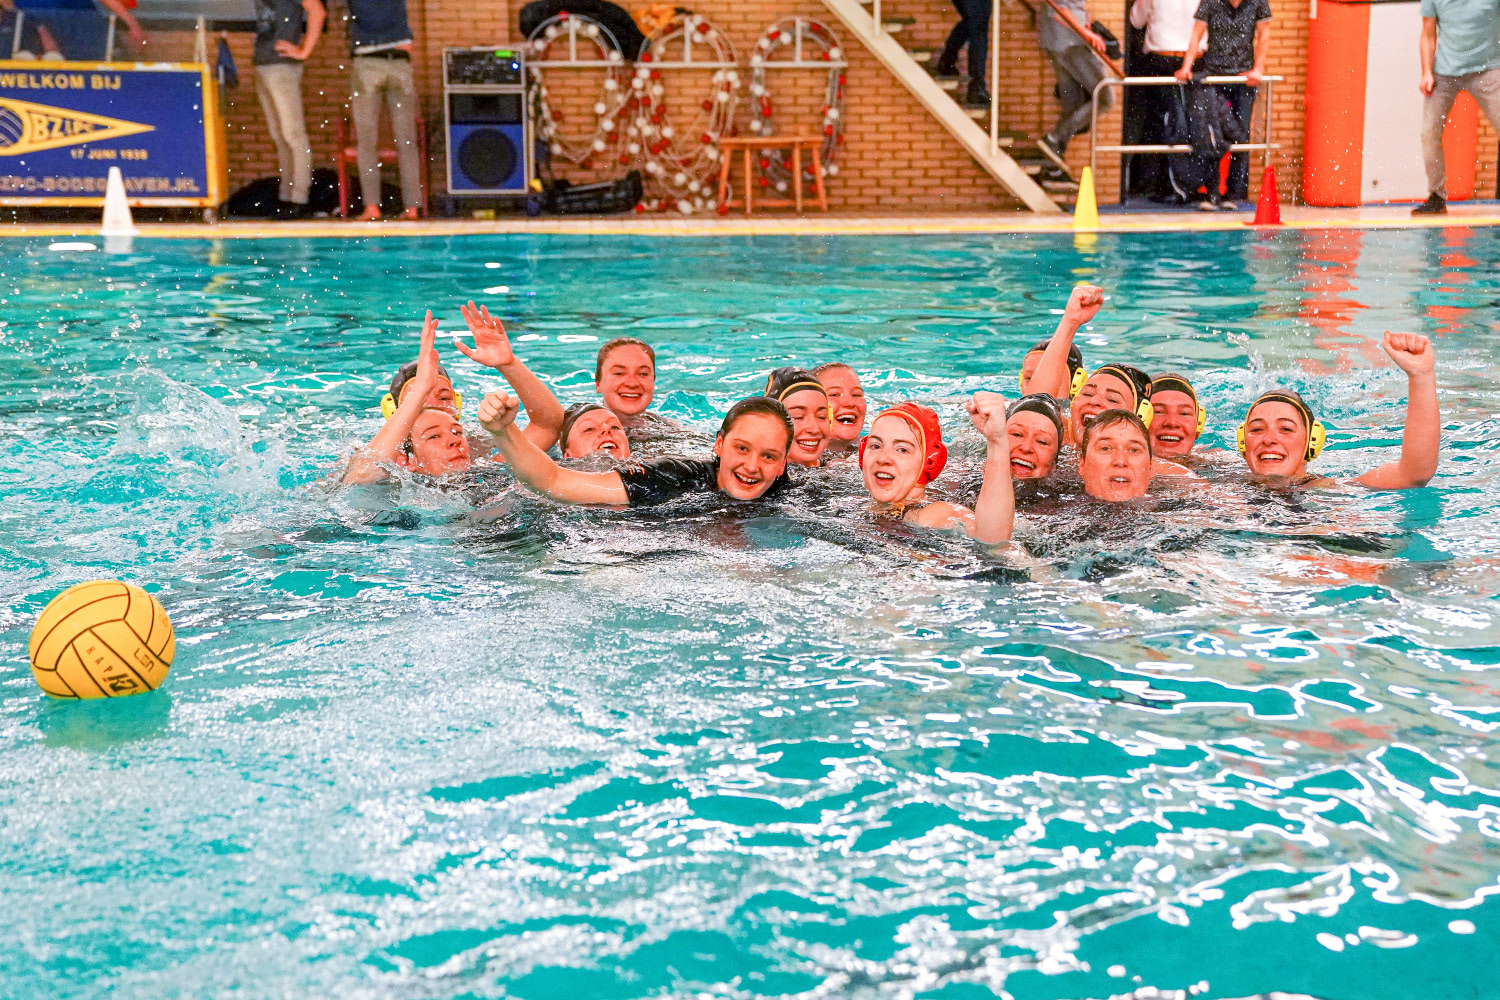 Waterpolo Den Haag na het bereiken van de finale |  Sportshoots.nl